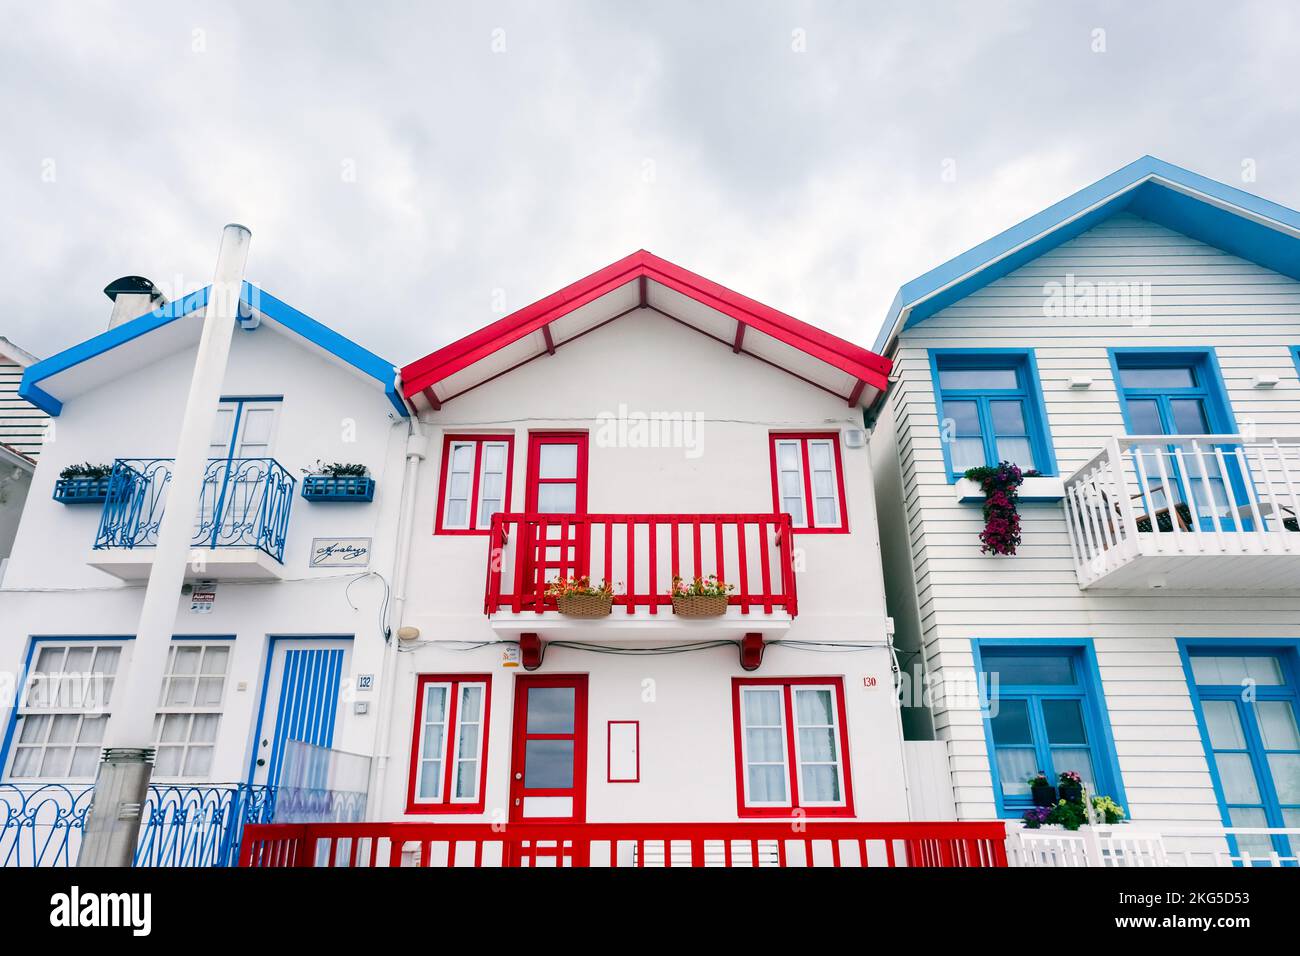 Vista sulla strada con le tipiche case a strisce colorate chiamate Palheiros. Costa Nova do Prado è un villaggio turistico sulla costa atlantica vicino ad Aveiro. Foto Stock